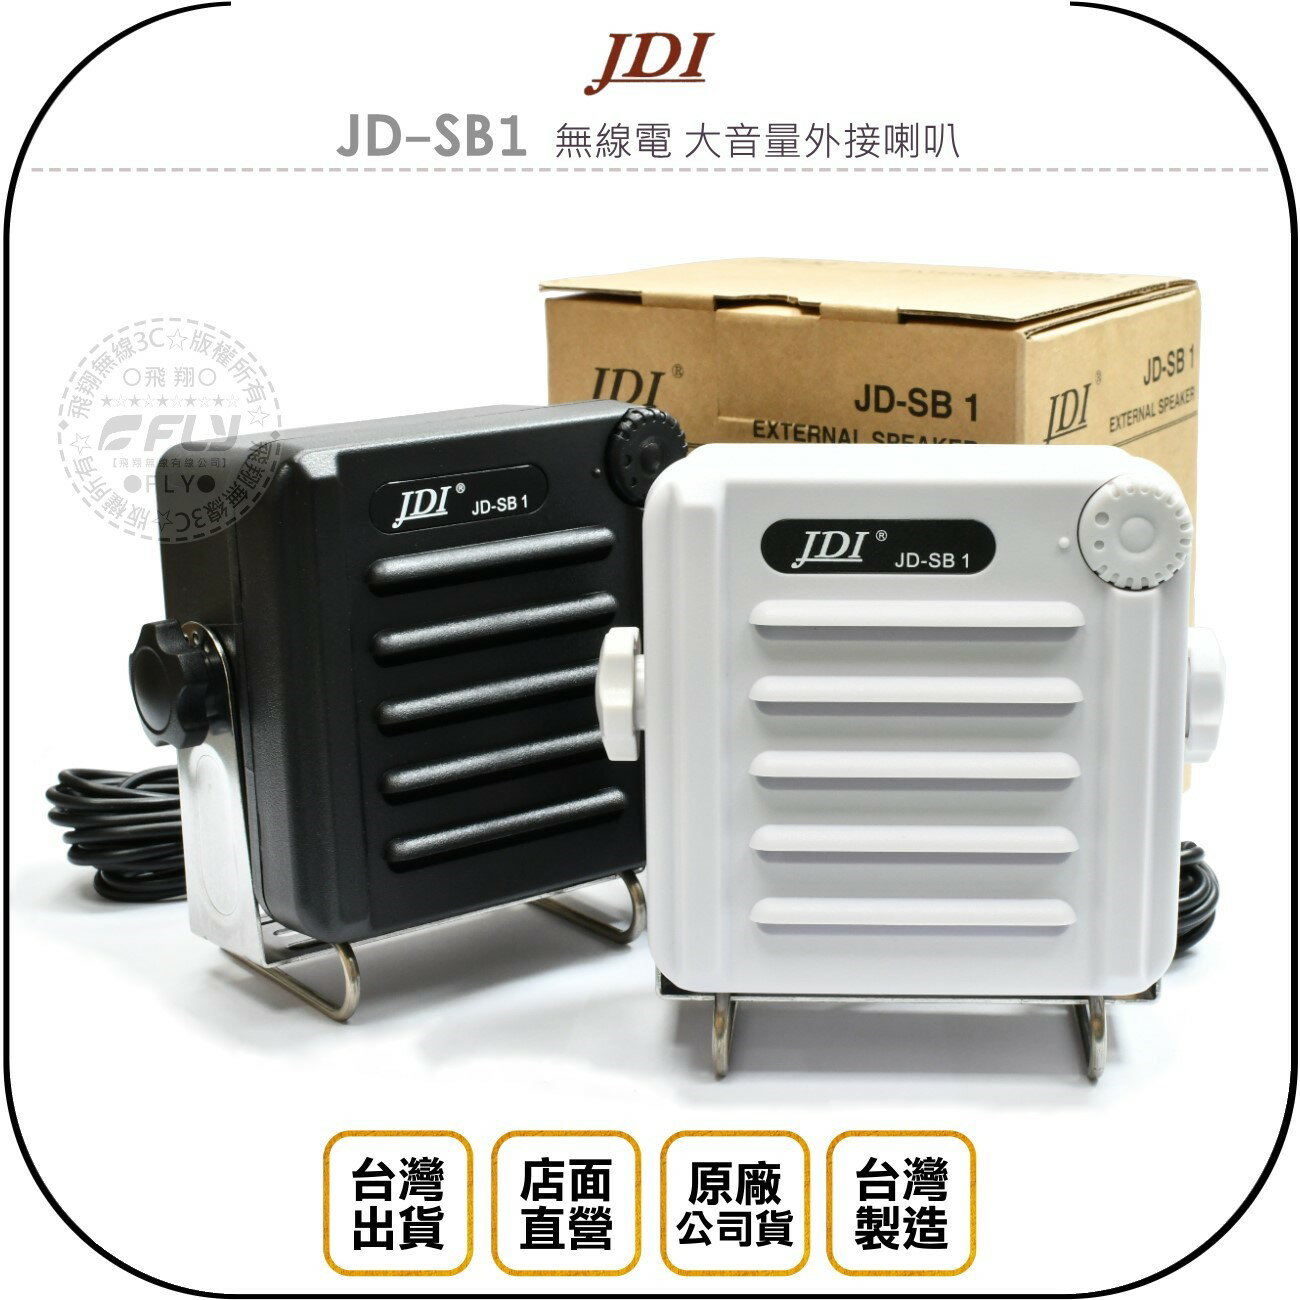 《飛翔無線3C》JDI JD-SB1 無線電 大音量外接喇叭◉公司貨◉台灣製造◉IP- 68防水◉車機擴音◉座台機收聽